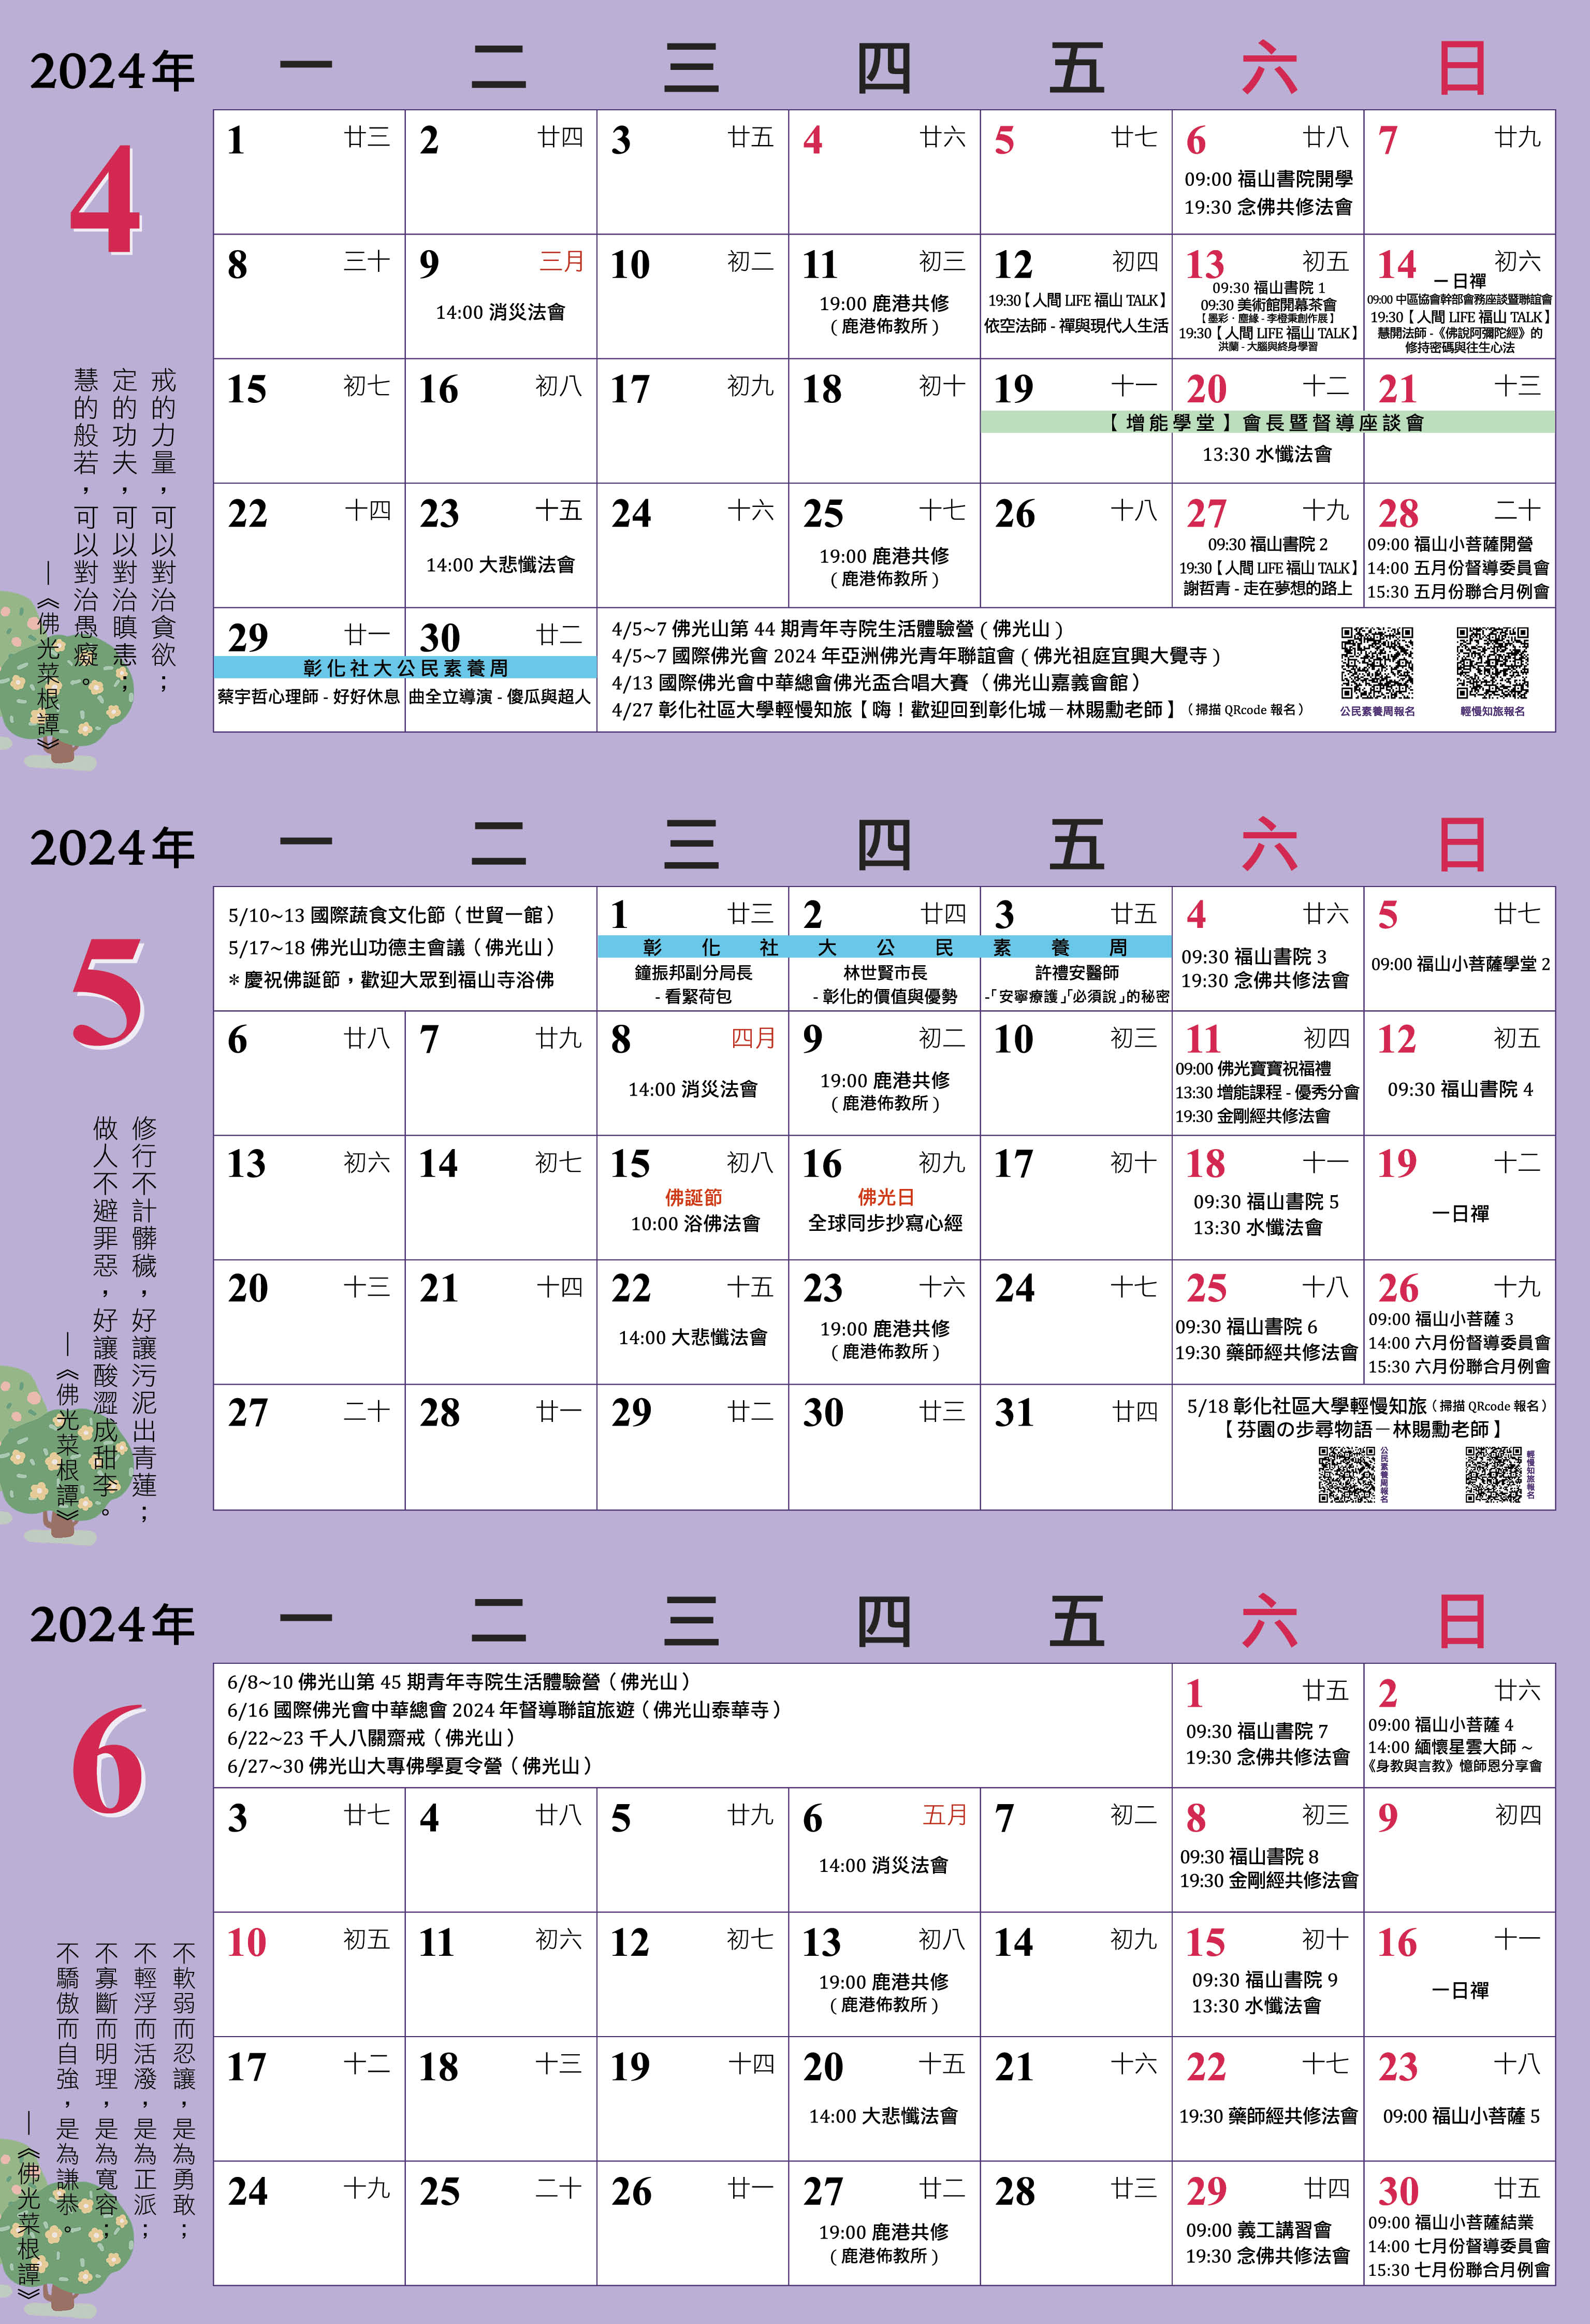 福山寺行事曆2024年04-06月-反.jpg